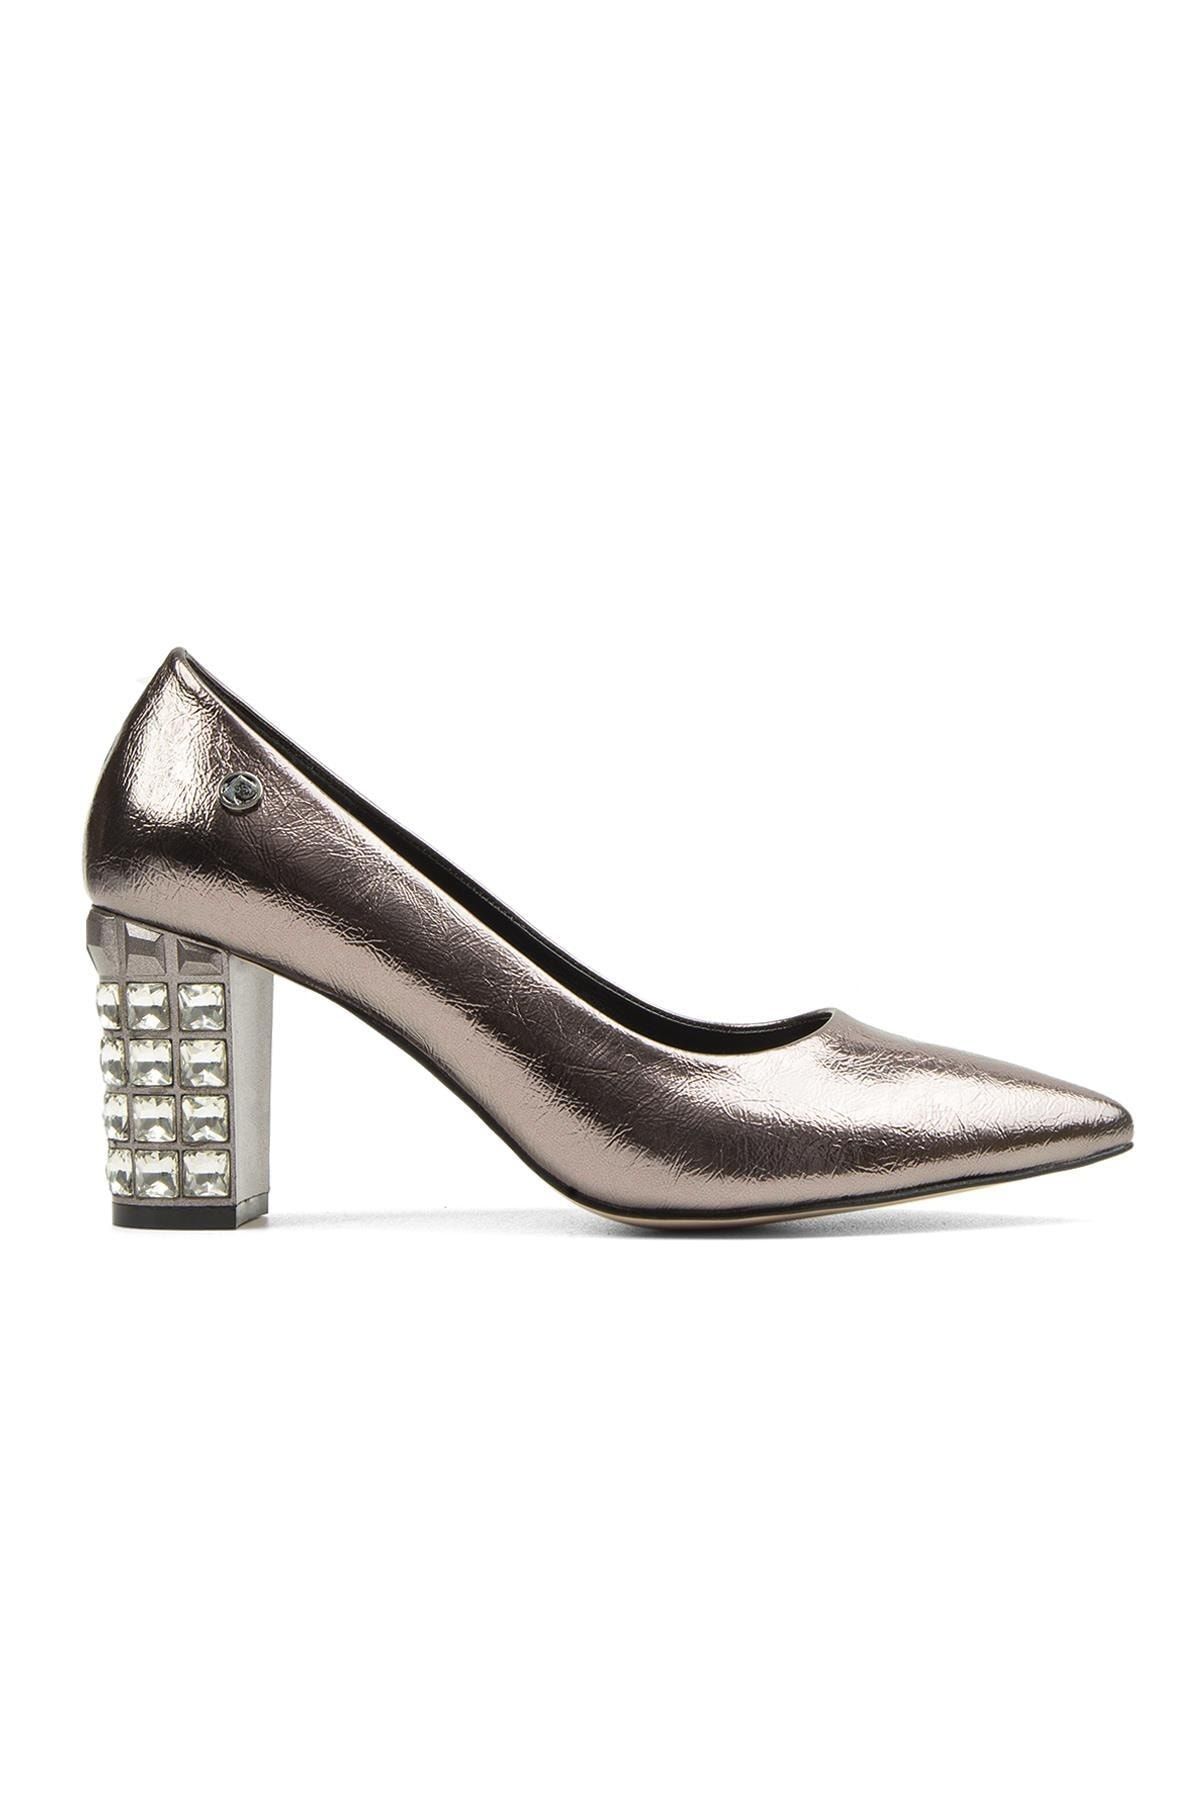 Pierre Cardin ® | Pc-51201 - 3478 Platin Kırısık - Kadın Topuklu Ayakkabı